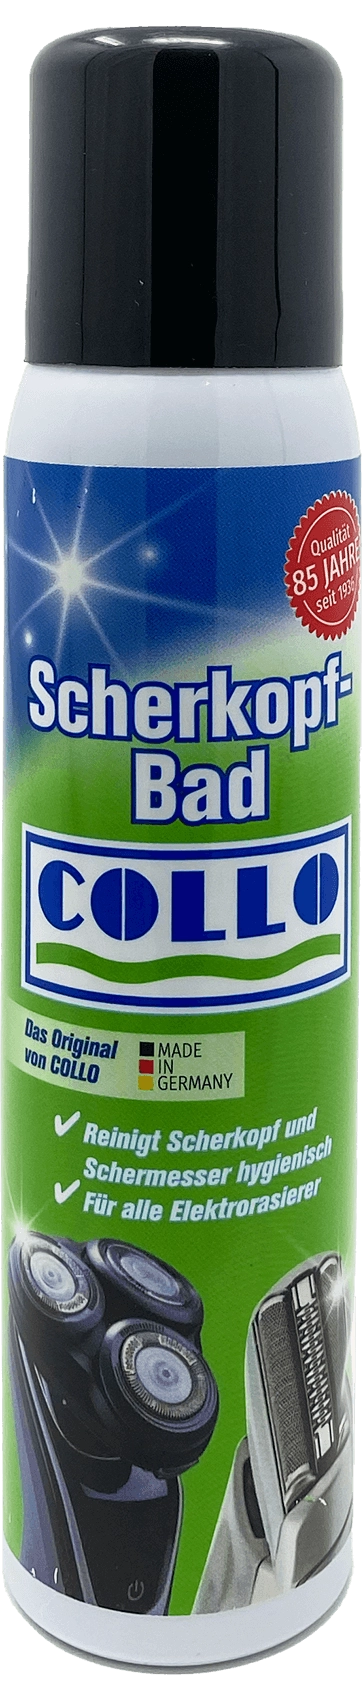 SCHERKOPF-BAD Desinfektion für Elektrorasierer, 100 ml